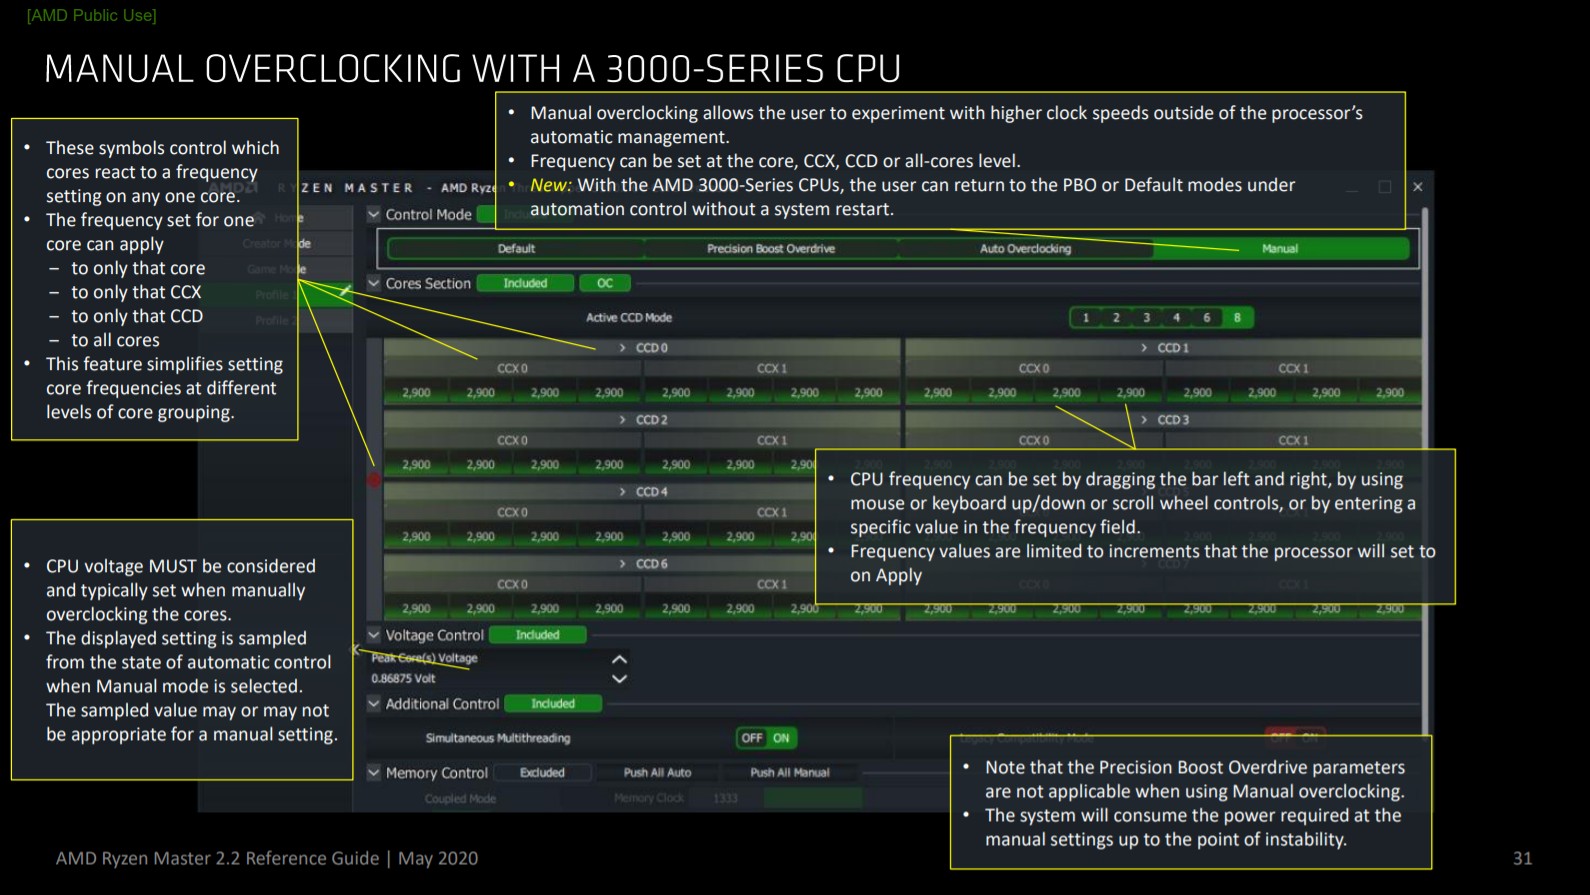 Cách sử dụng Ryzen Master 2.2 của AMD (Phiên bản tháng 5 năm 2020) để ép xung CPU của bạn 